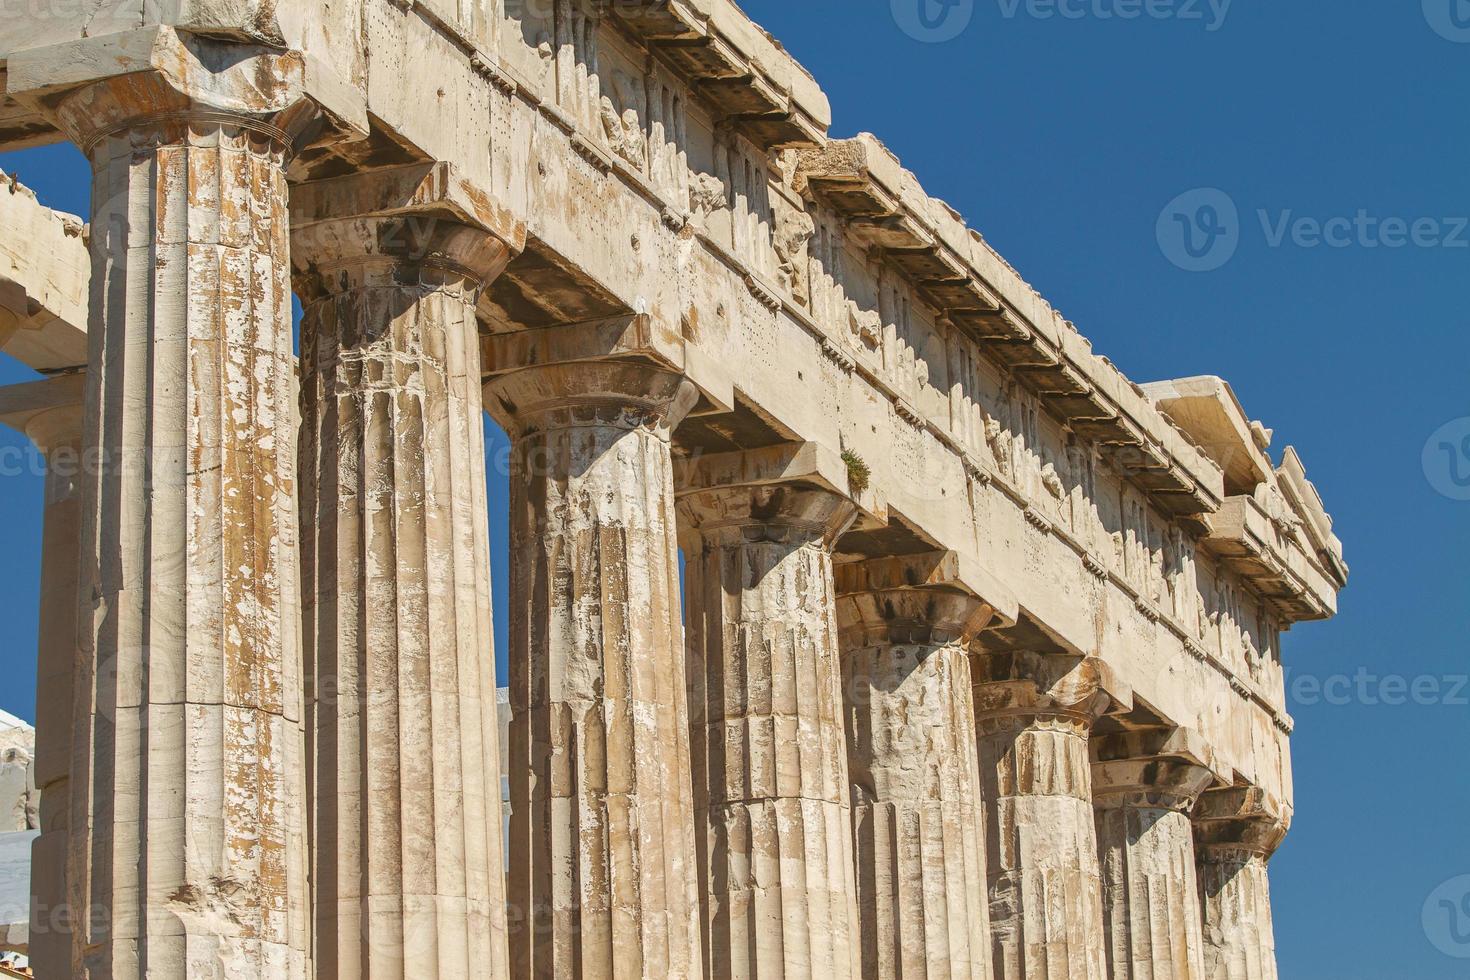 Parthenon auf der Akropolis in Athen Griechenland foto